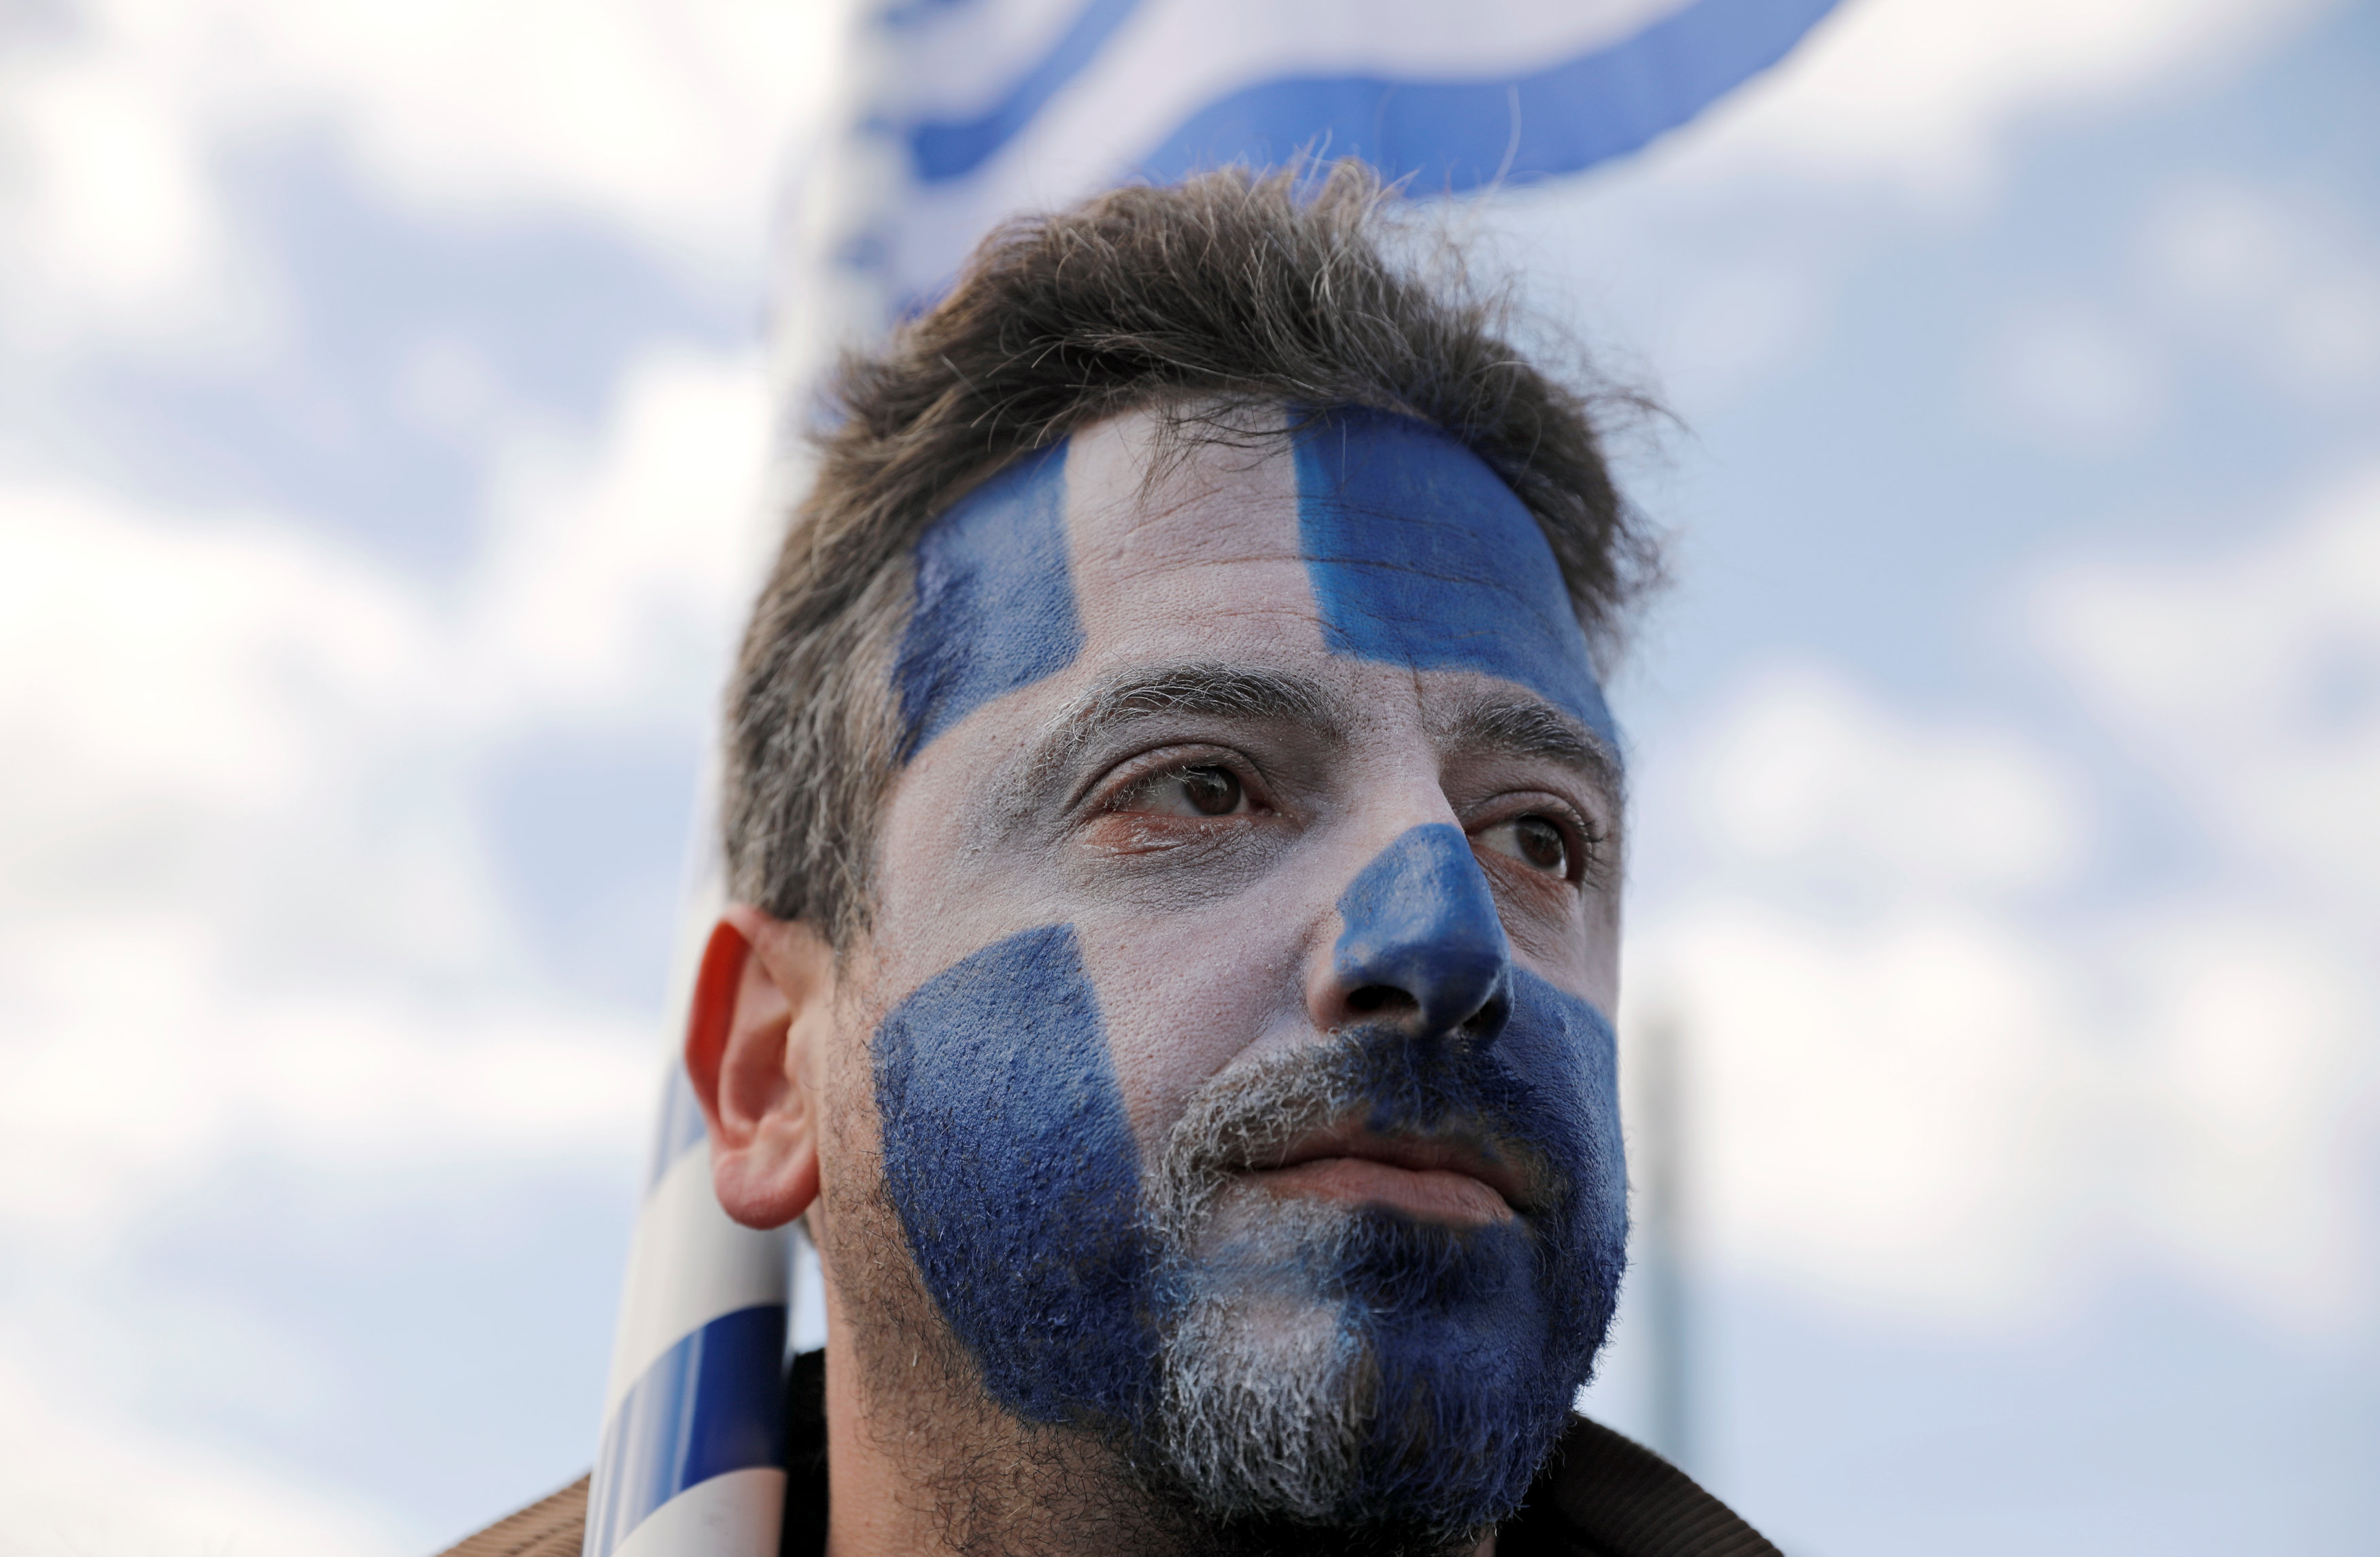 أحد المتظاهرين يرسم علم اليونان على وجهه